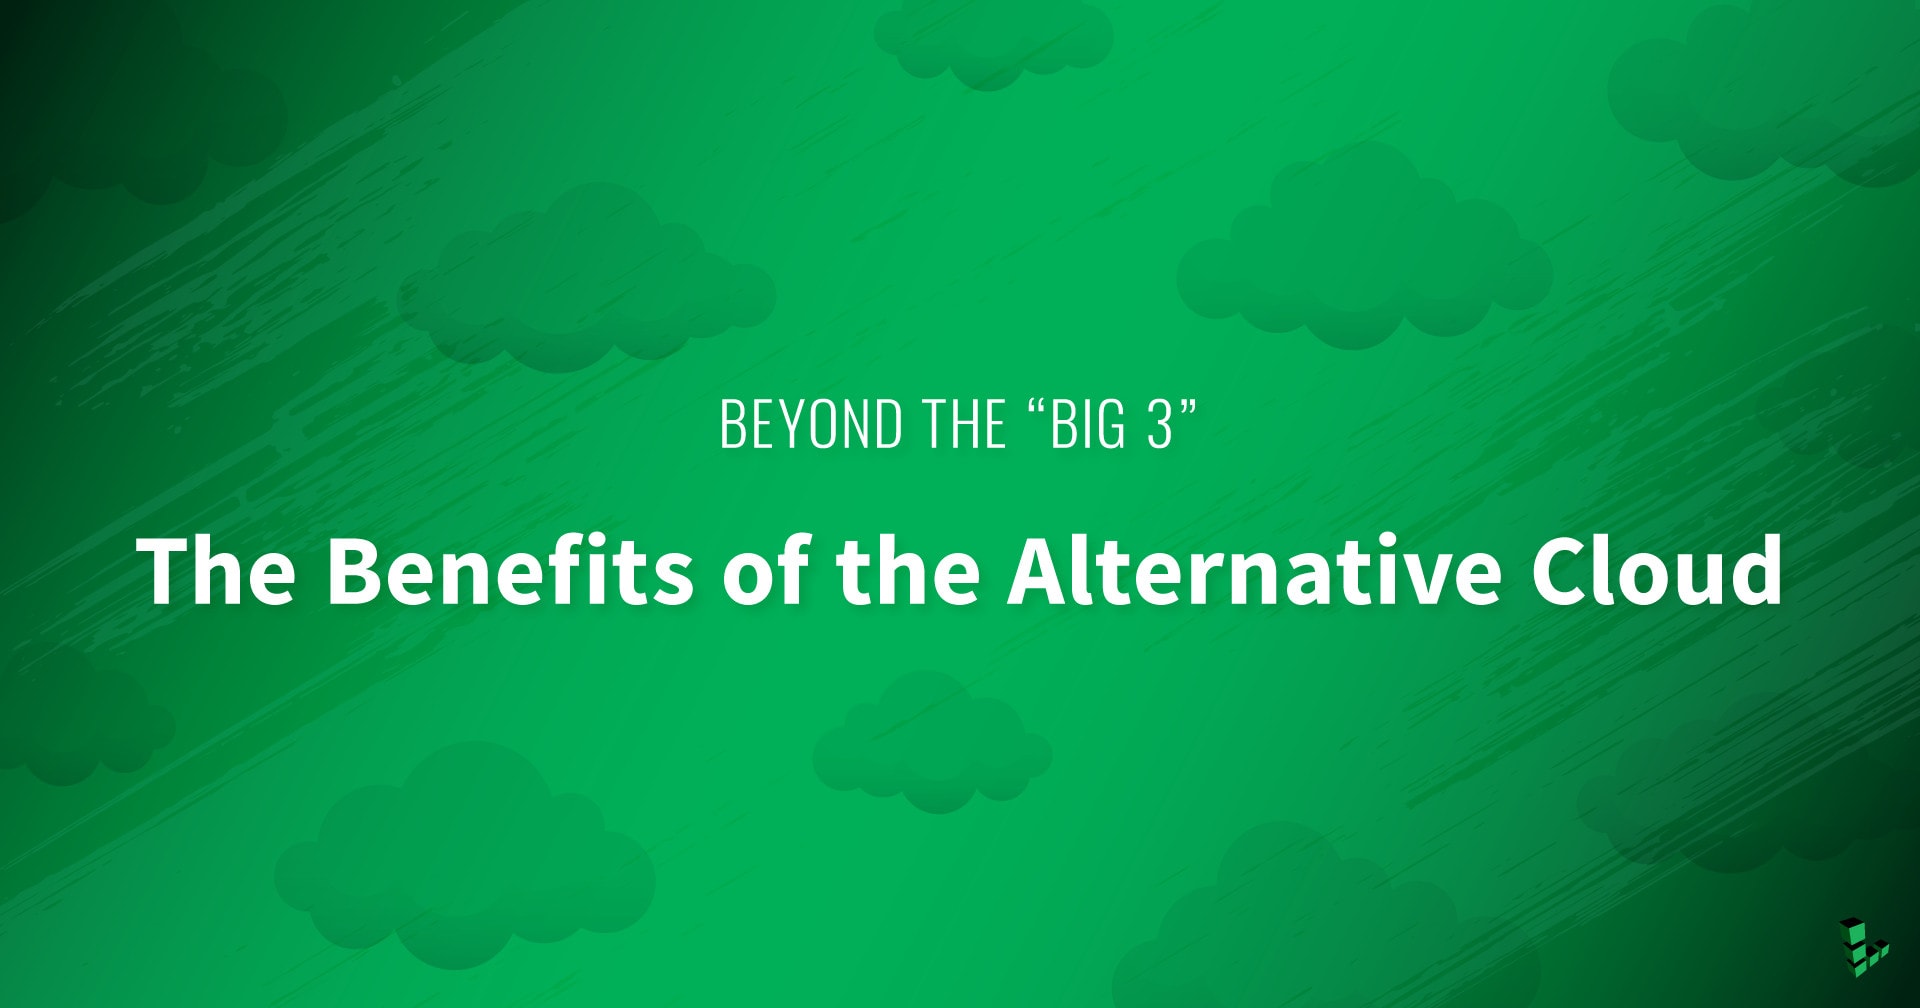 Além do "Big 3": Os Benefícios da Nuvem Alternativa